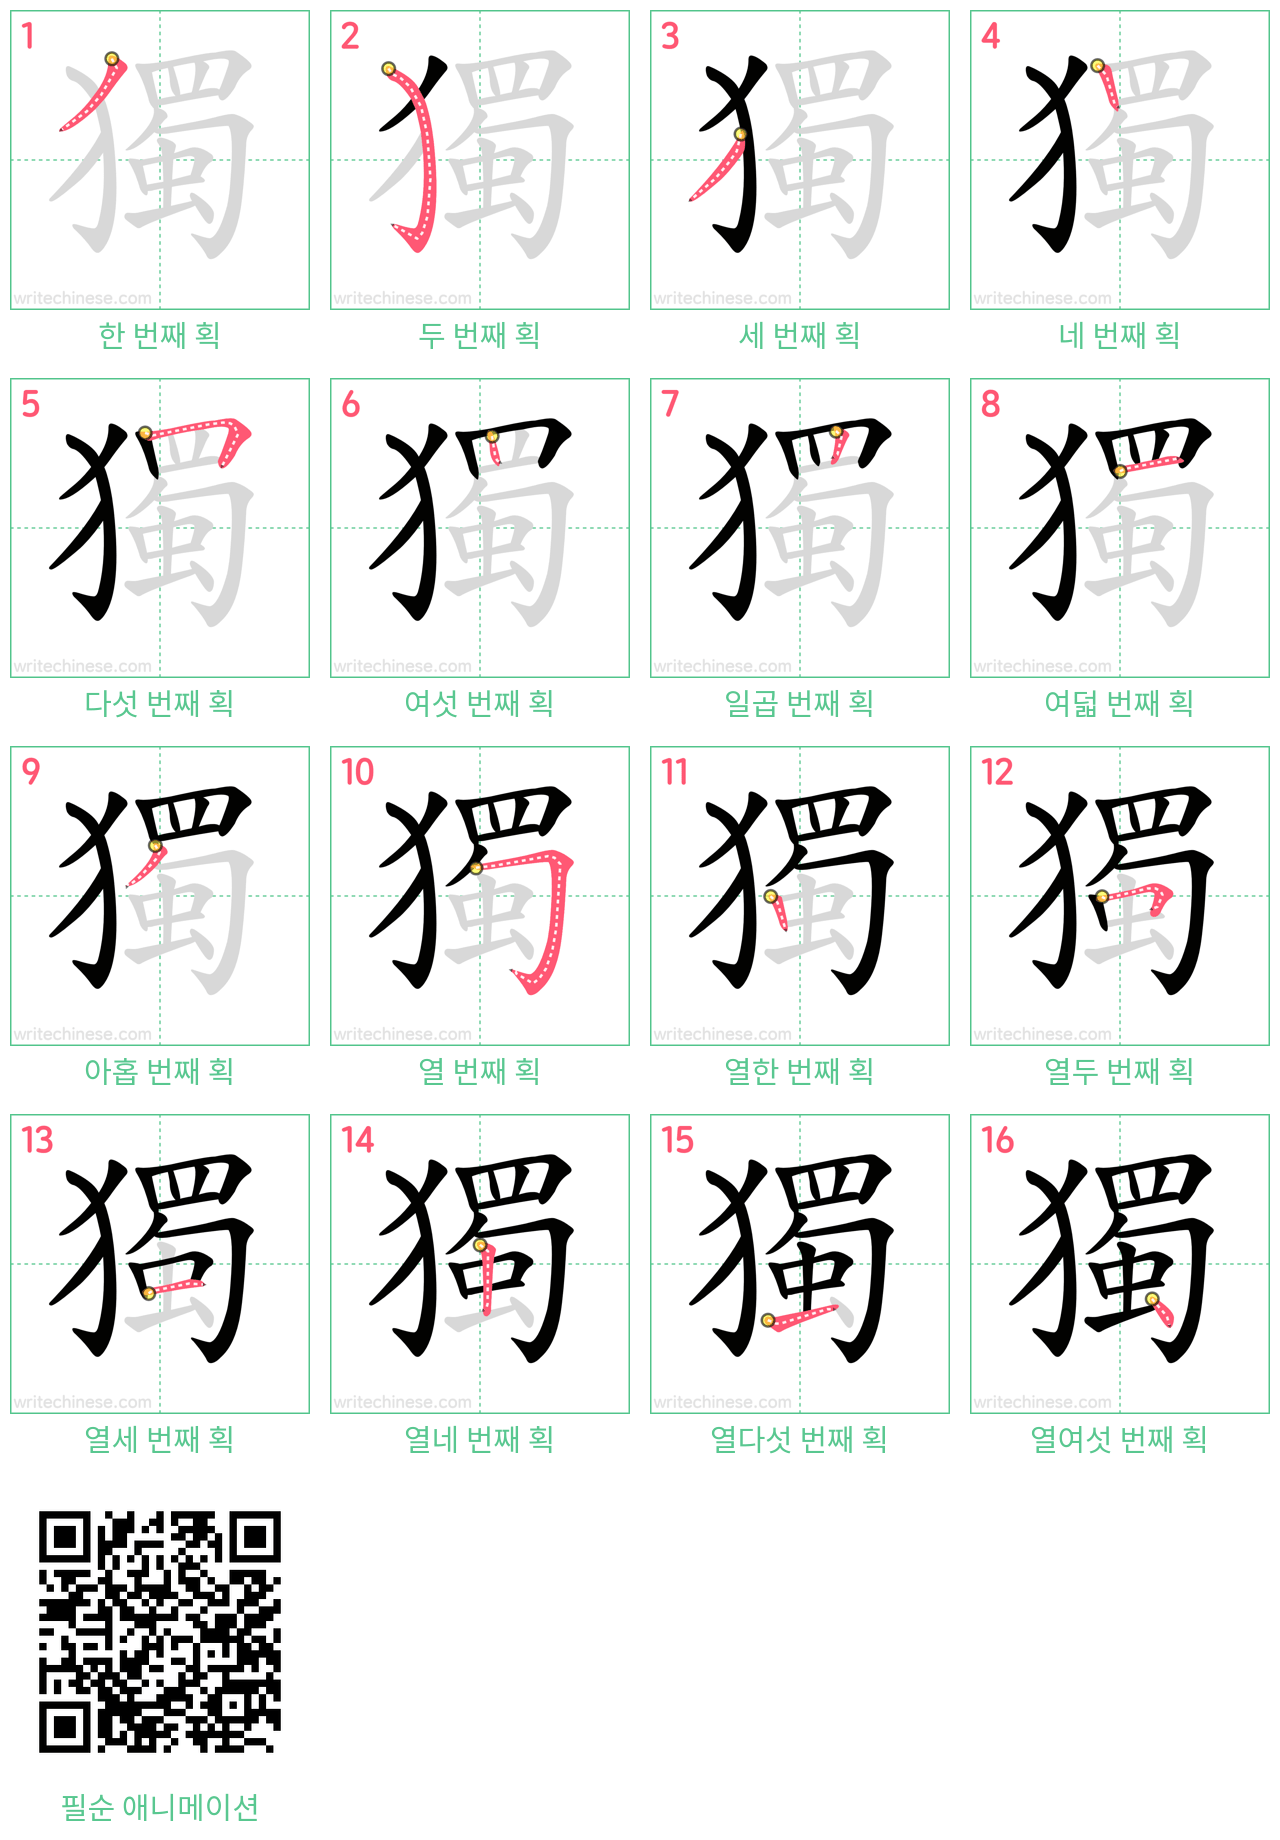 獨 step-by-step stroke order diagrams